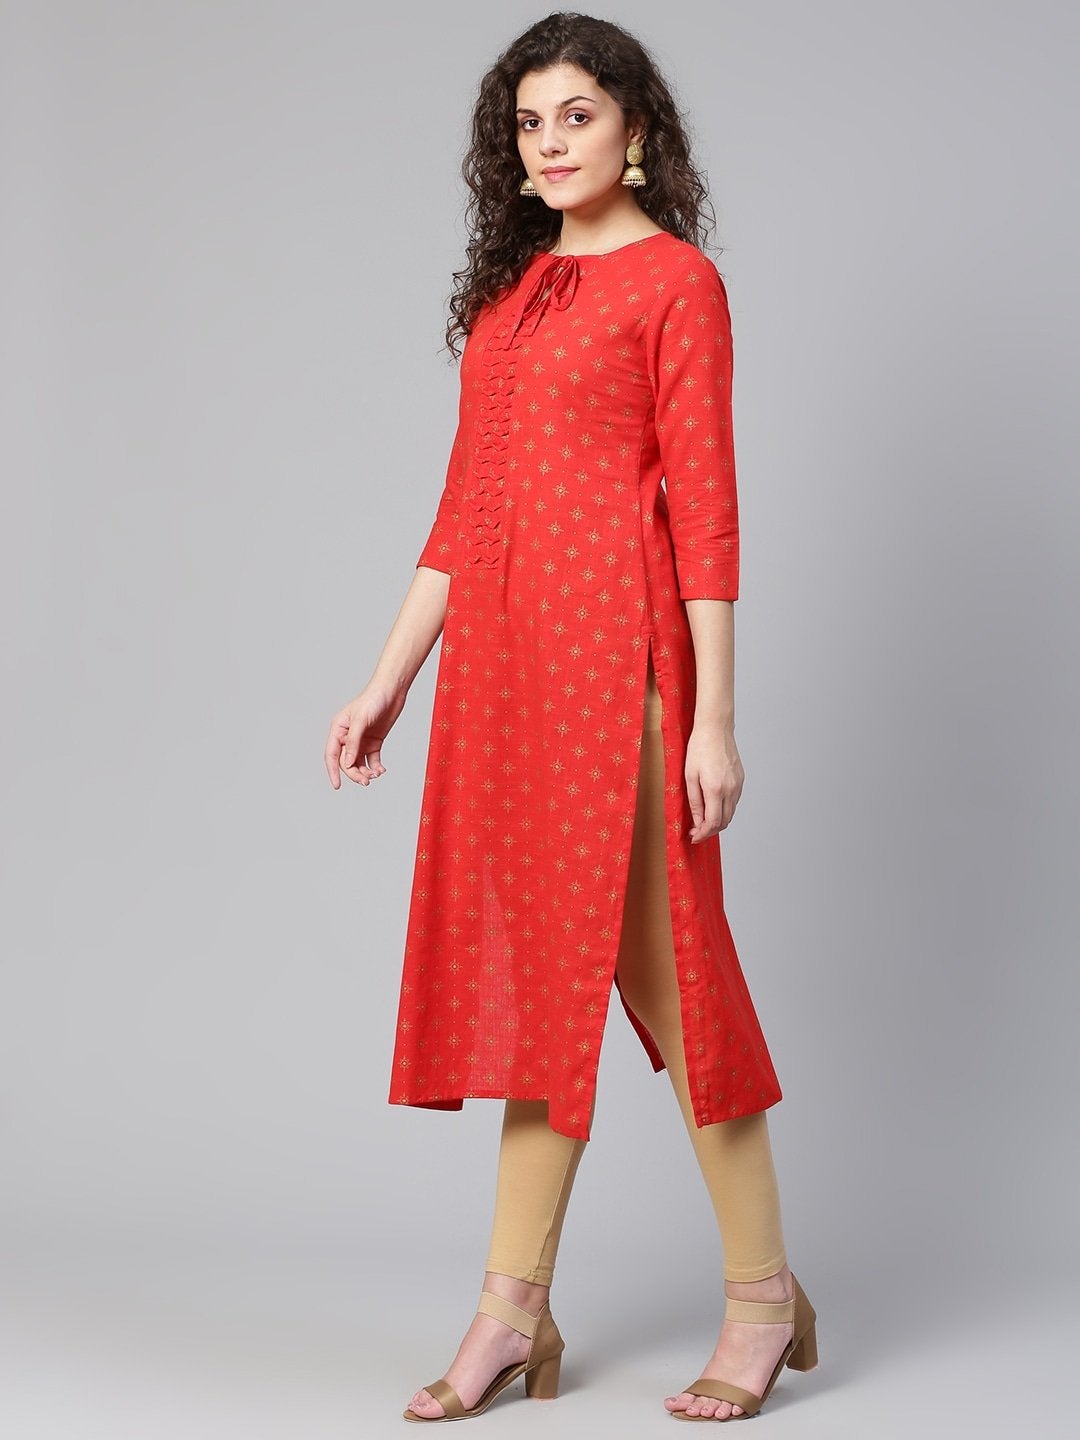 Women's Red & Golden Printed Straight Kurta - Meeranshi